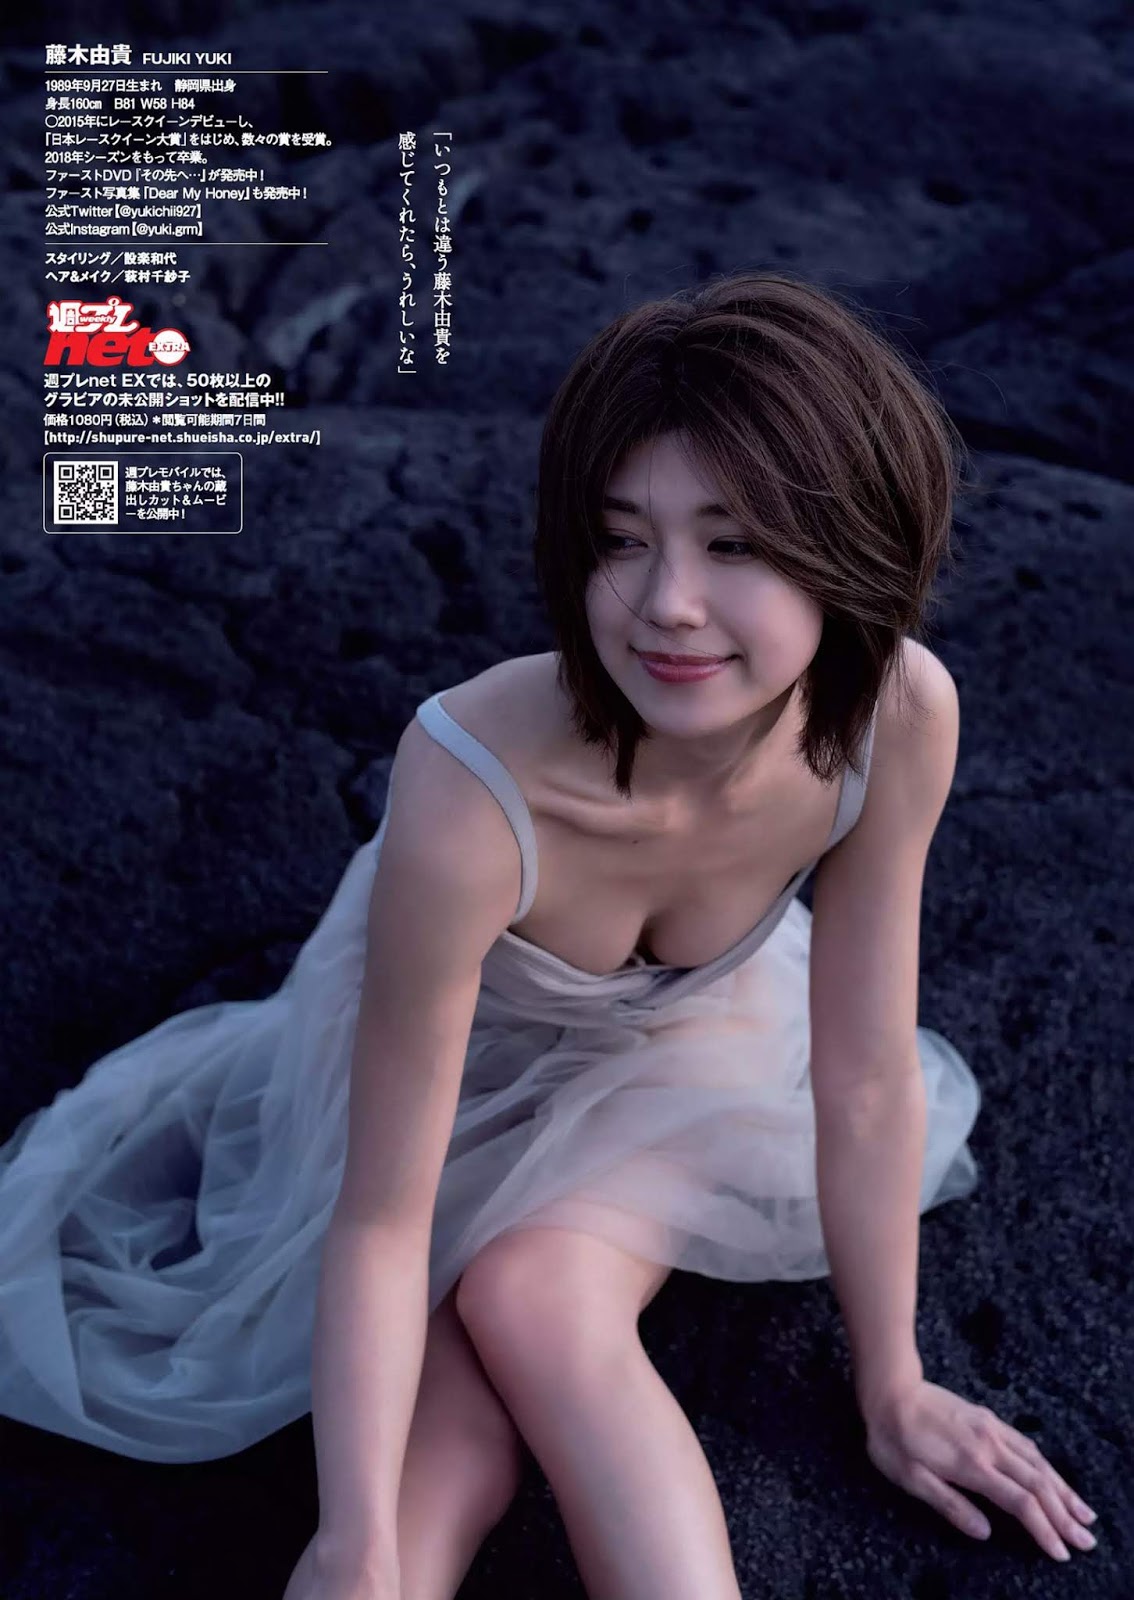 ふ じ き ゆ き, 藤 木 由 貴, Fujiki Yuki - Weekly Playboy, 2019.05.13 "濡 れ て 包 ...